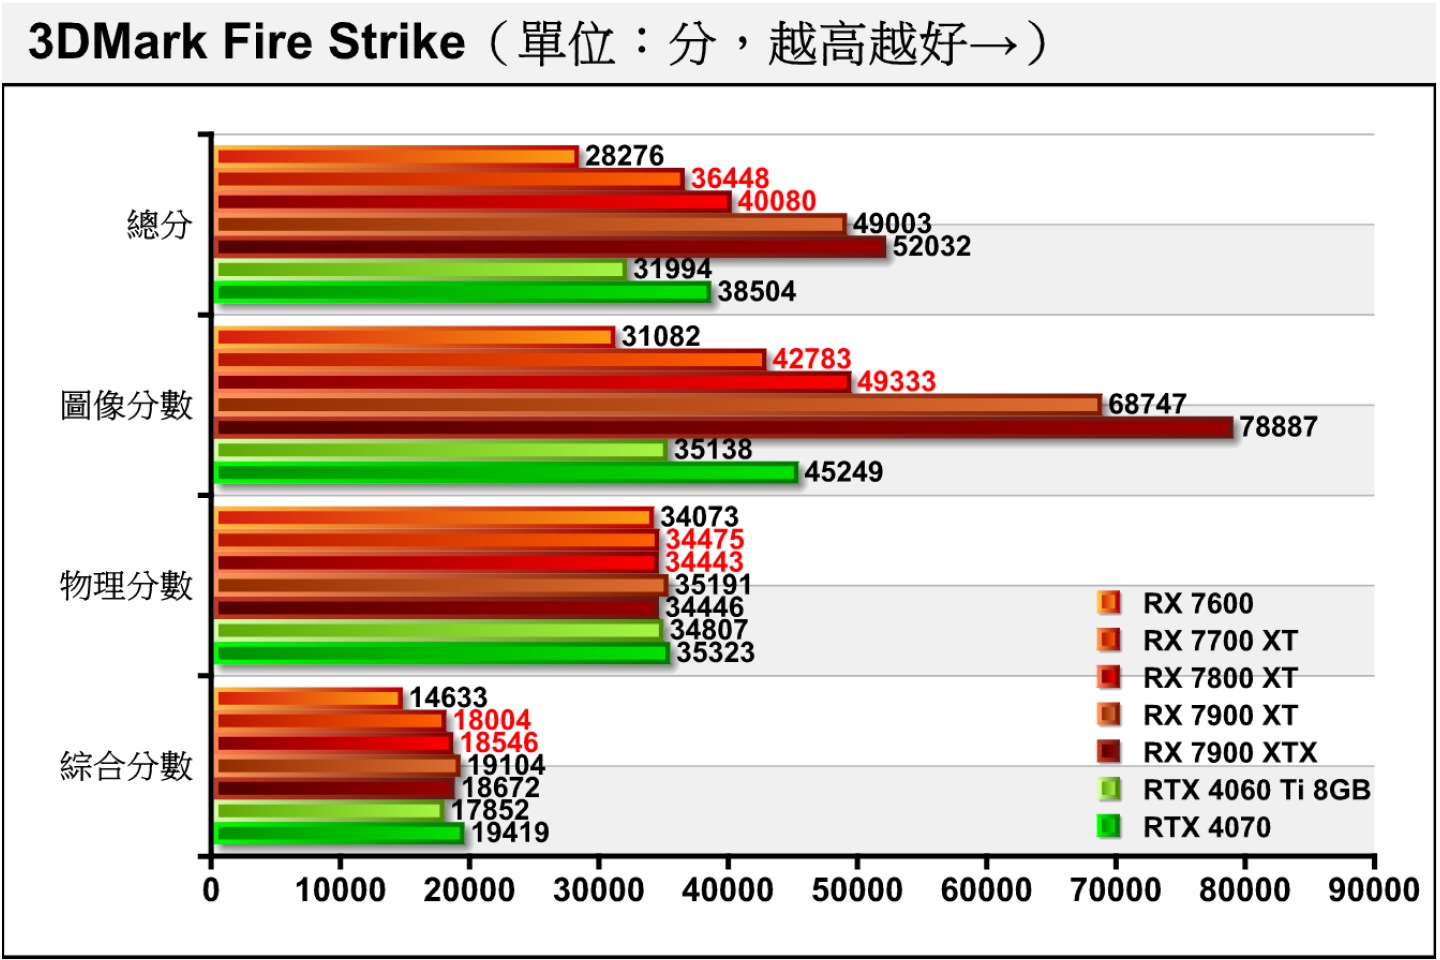 3DMark Fire Strike採用Direct X 11繪圖API配1080p解析度（1920 x 1080），由於各張顯示卡都配一樣的處理器，所以物理分數會相當接近。RX 7800 XT、RX 7700 XT在圖像分數分別能領先RTX 4070、RTX 4060 Ti 8GB達9.03%、21.76%，表現相當不錯。